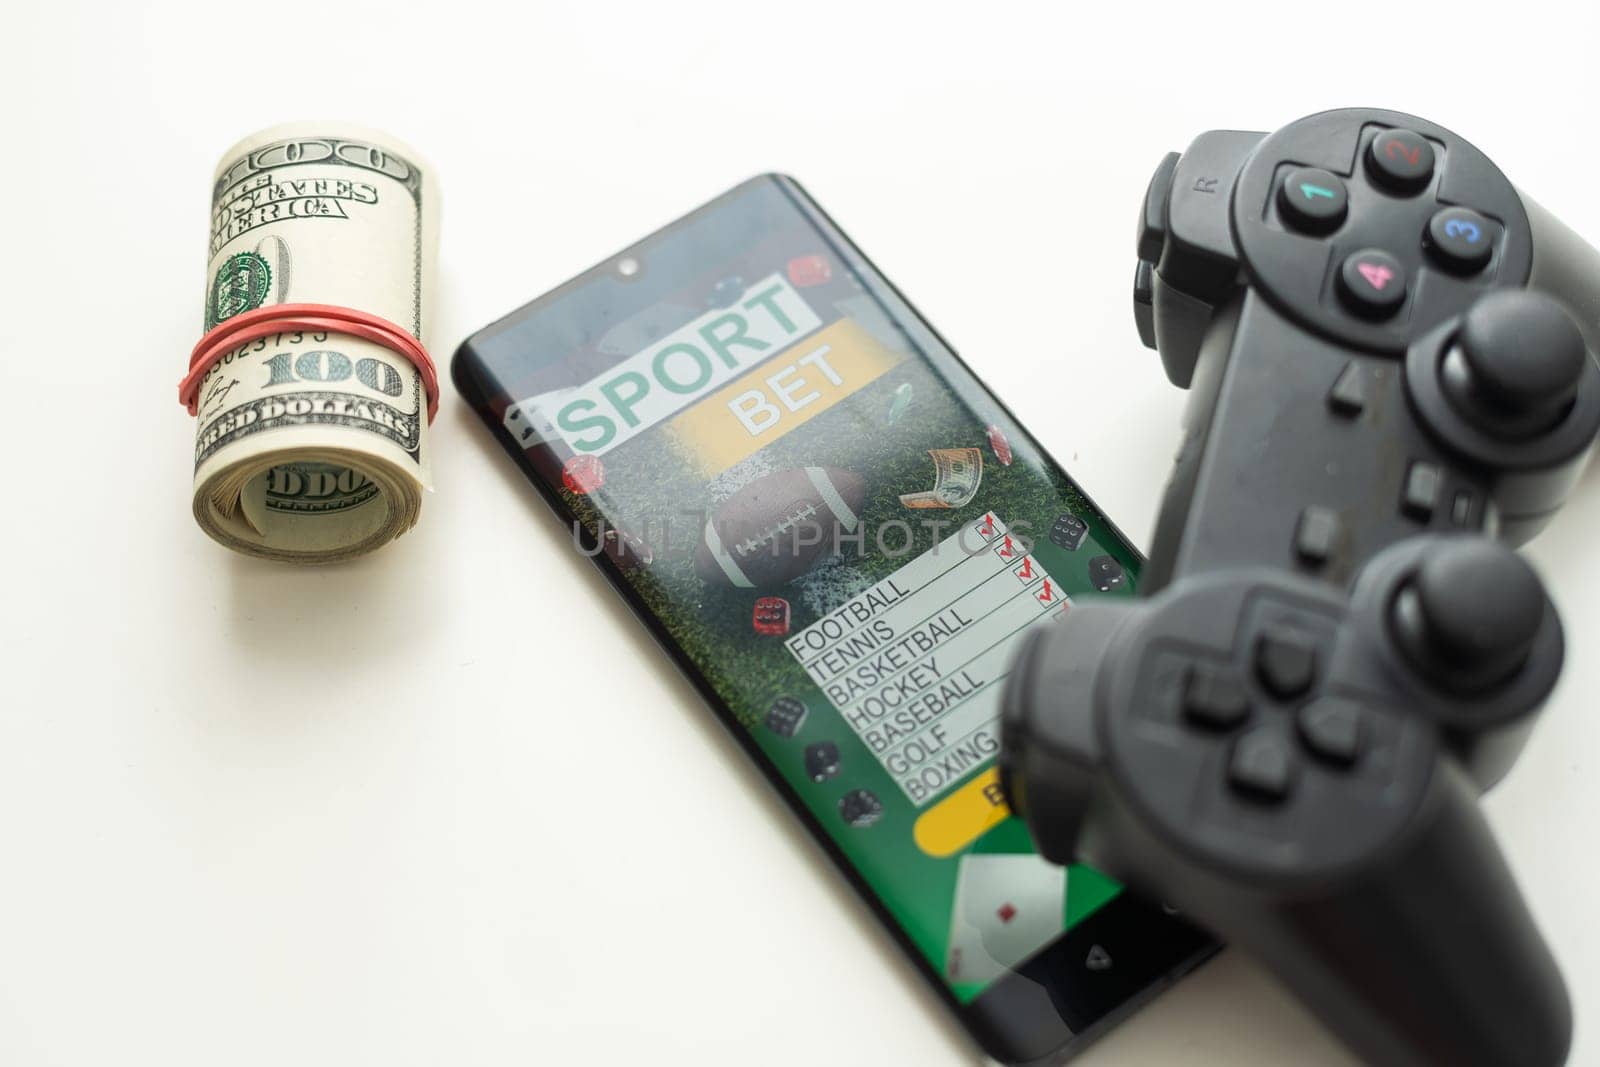 smartphone against gambling app screen.